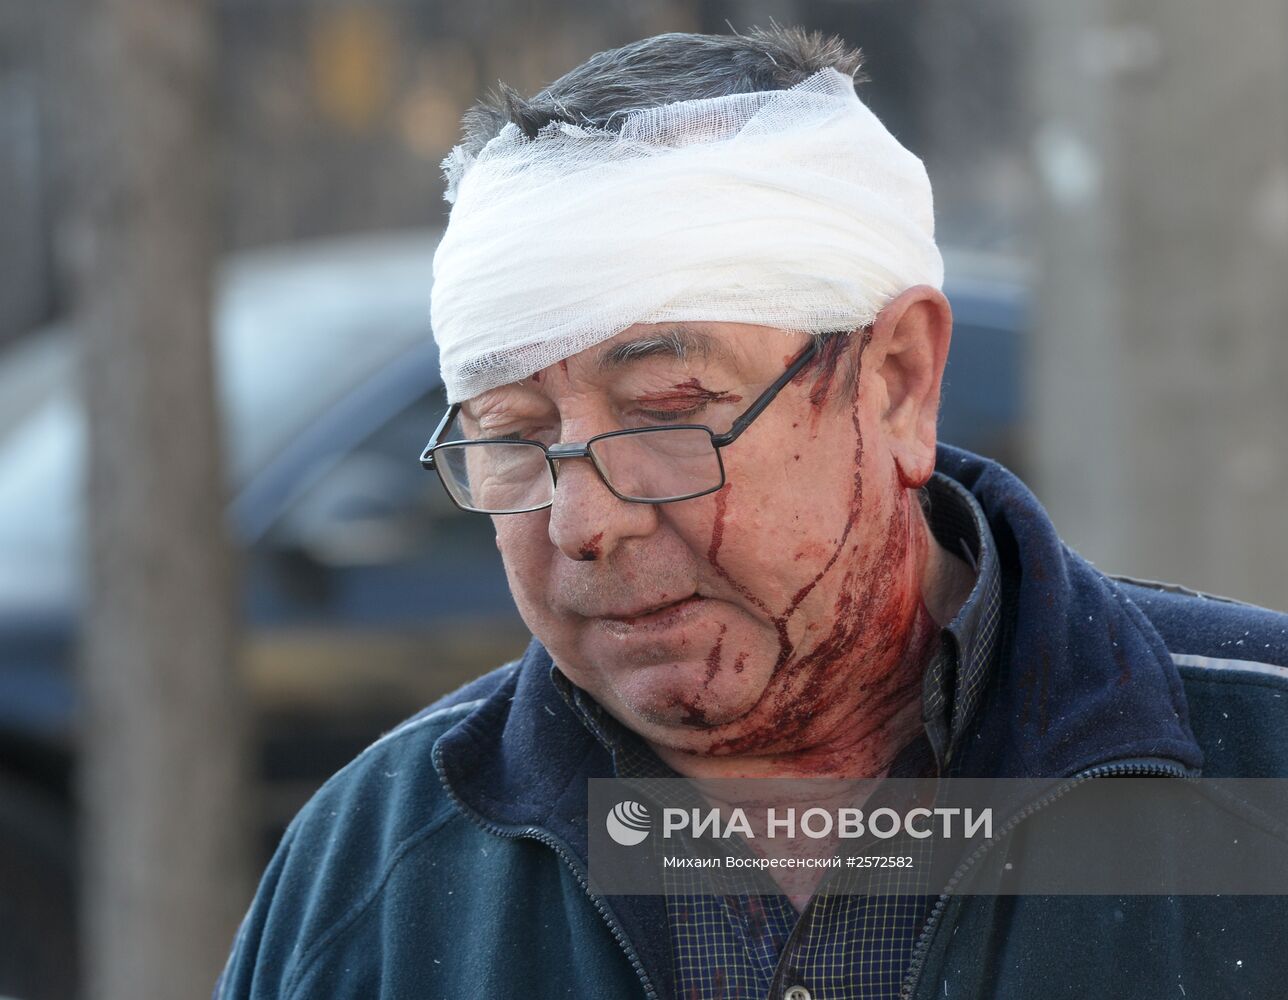 Взрыв прогремел в Донецке рядом с резиденцией Захарченко